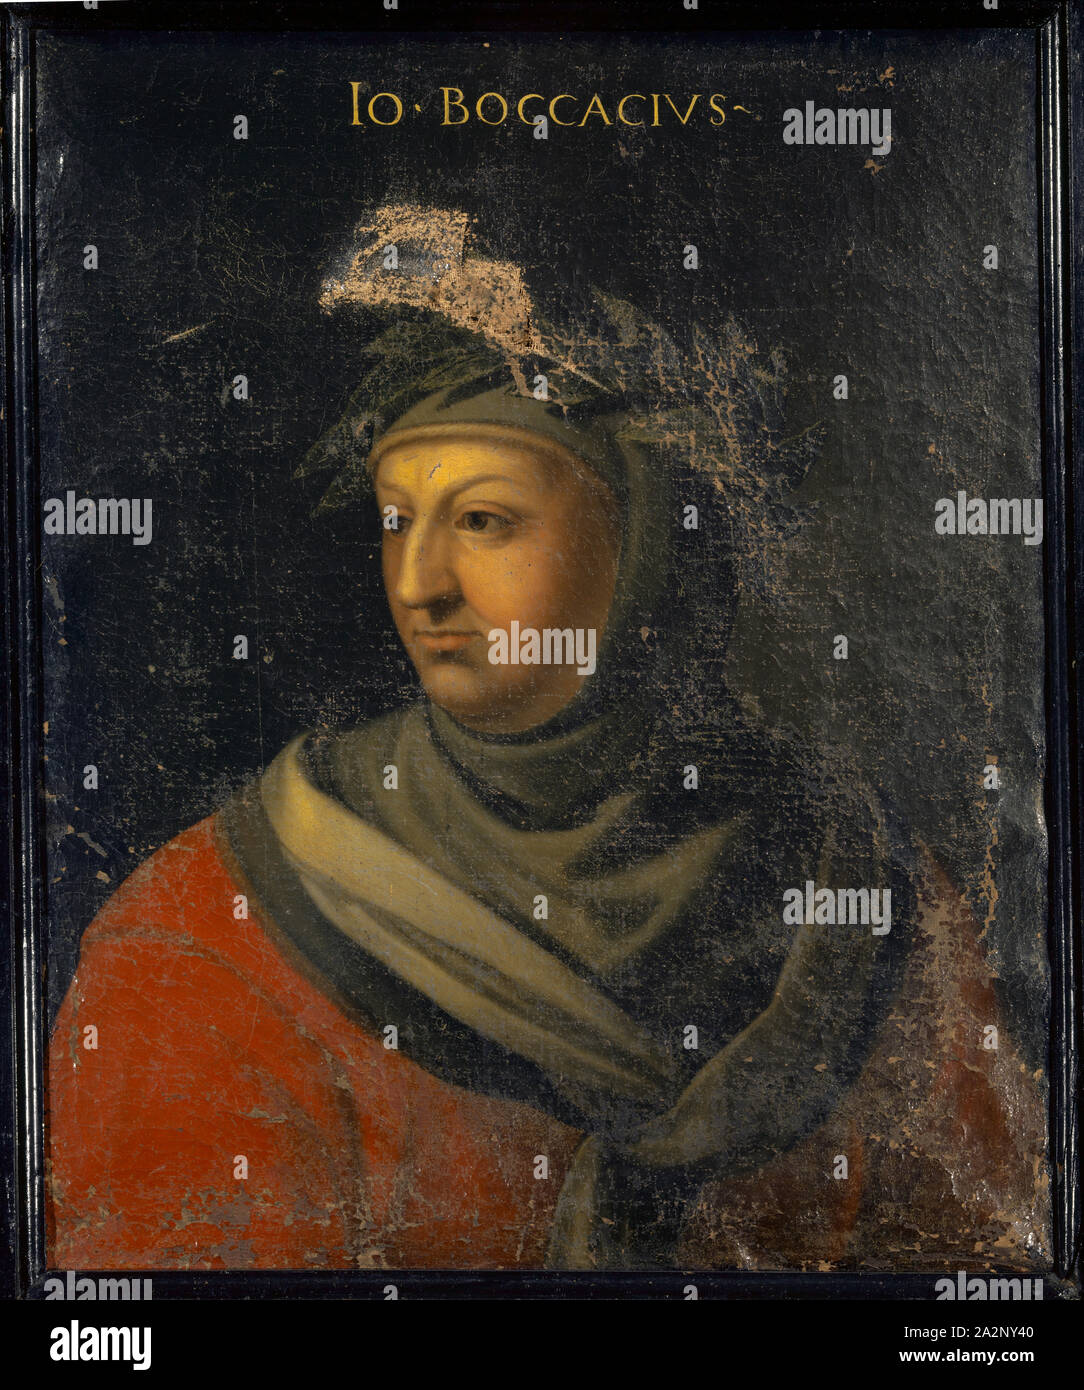 Ritratto di Giovanni Boccaccio, olio su tela 76,5 x 62 cm, non specificato., sopra: IO [ANNES] • BOCCACIVS -, Cristofano (di Papi) dell' altissimo, (Kopie nach / copia dopo), um 1525-1605 Florenz Foto Stock